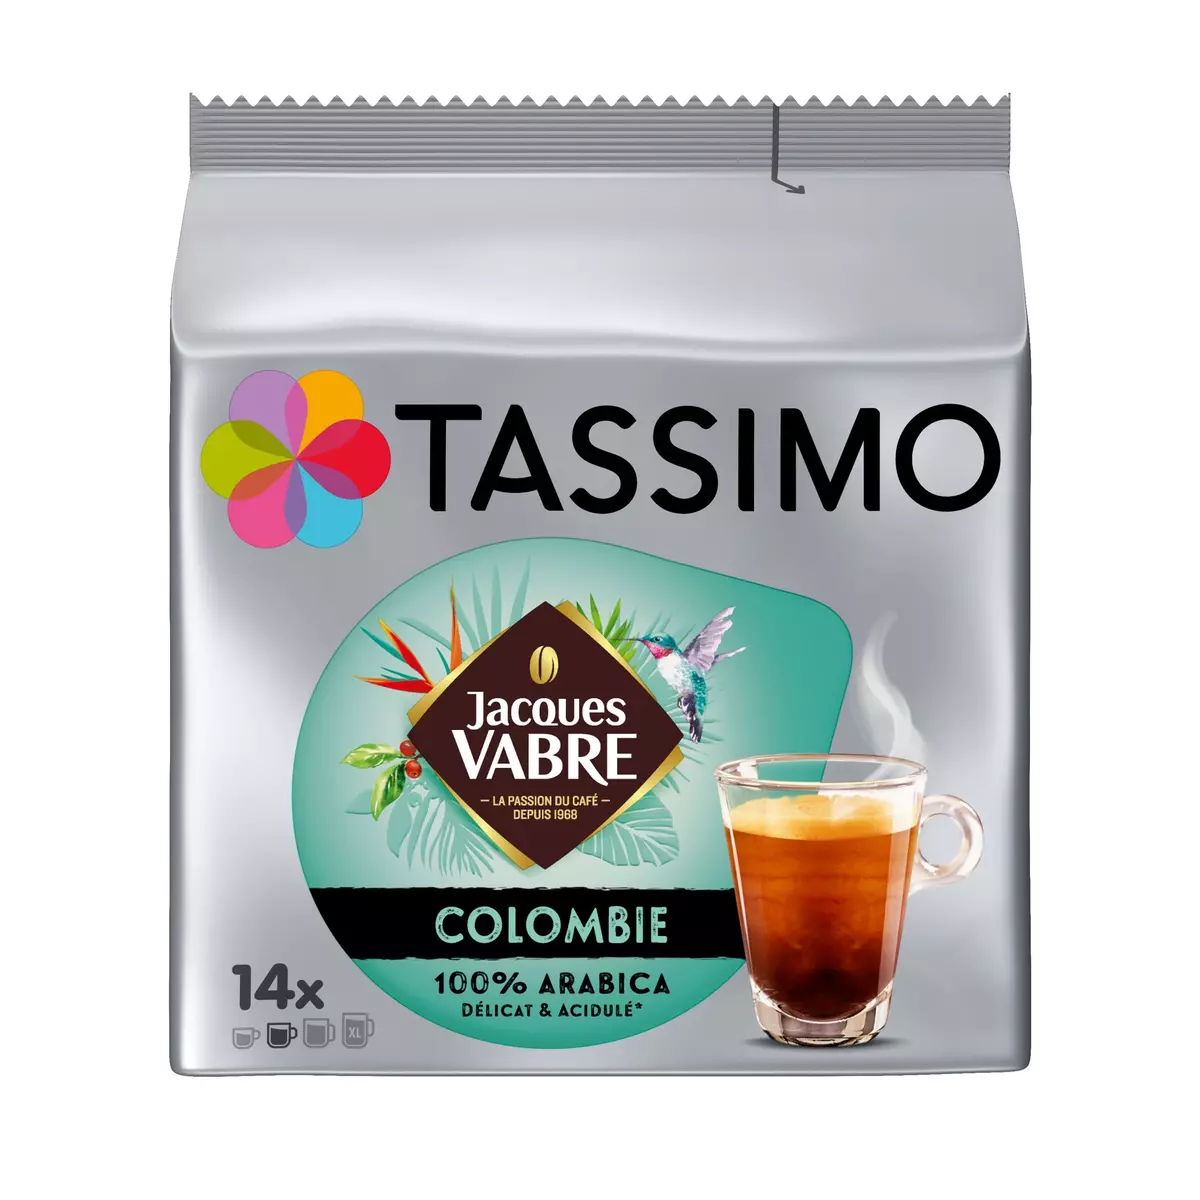 TASSIMO Dosettes de café Colombie Jacques Vabre 14 dosettes 97g